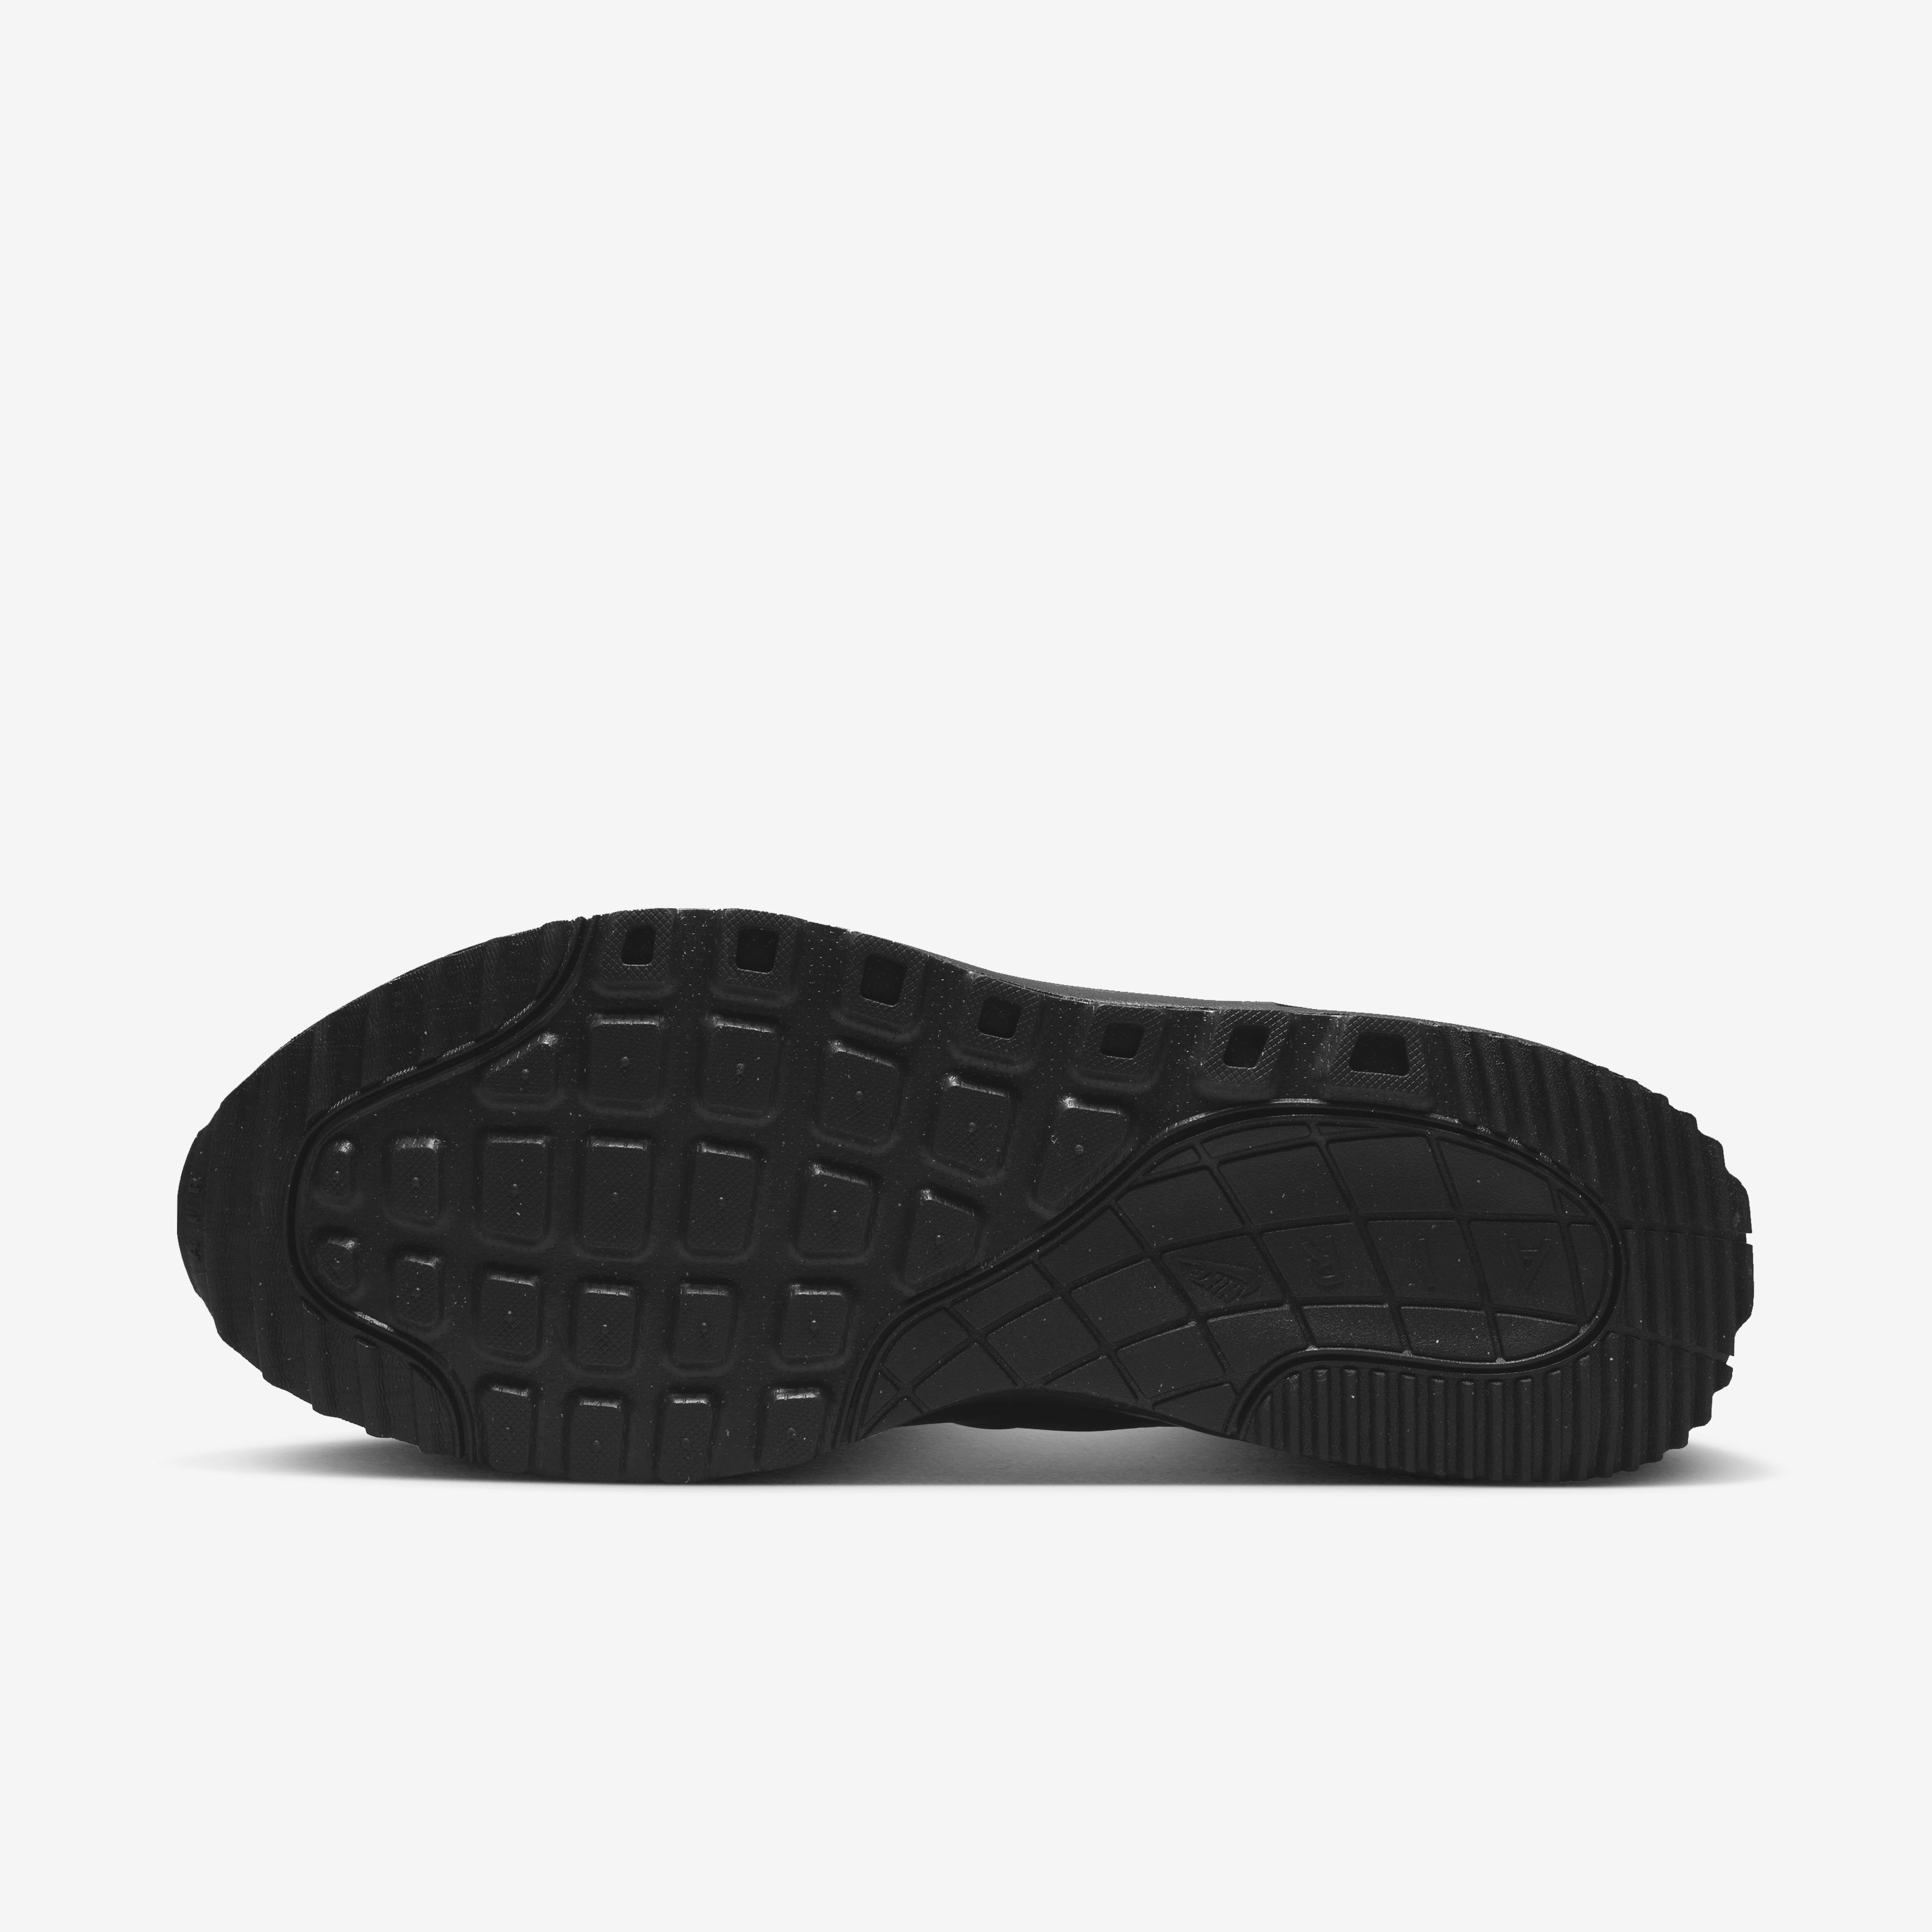 Zapatillas Nike Air Max Systm 004 Est. Vida Hombre Negro